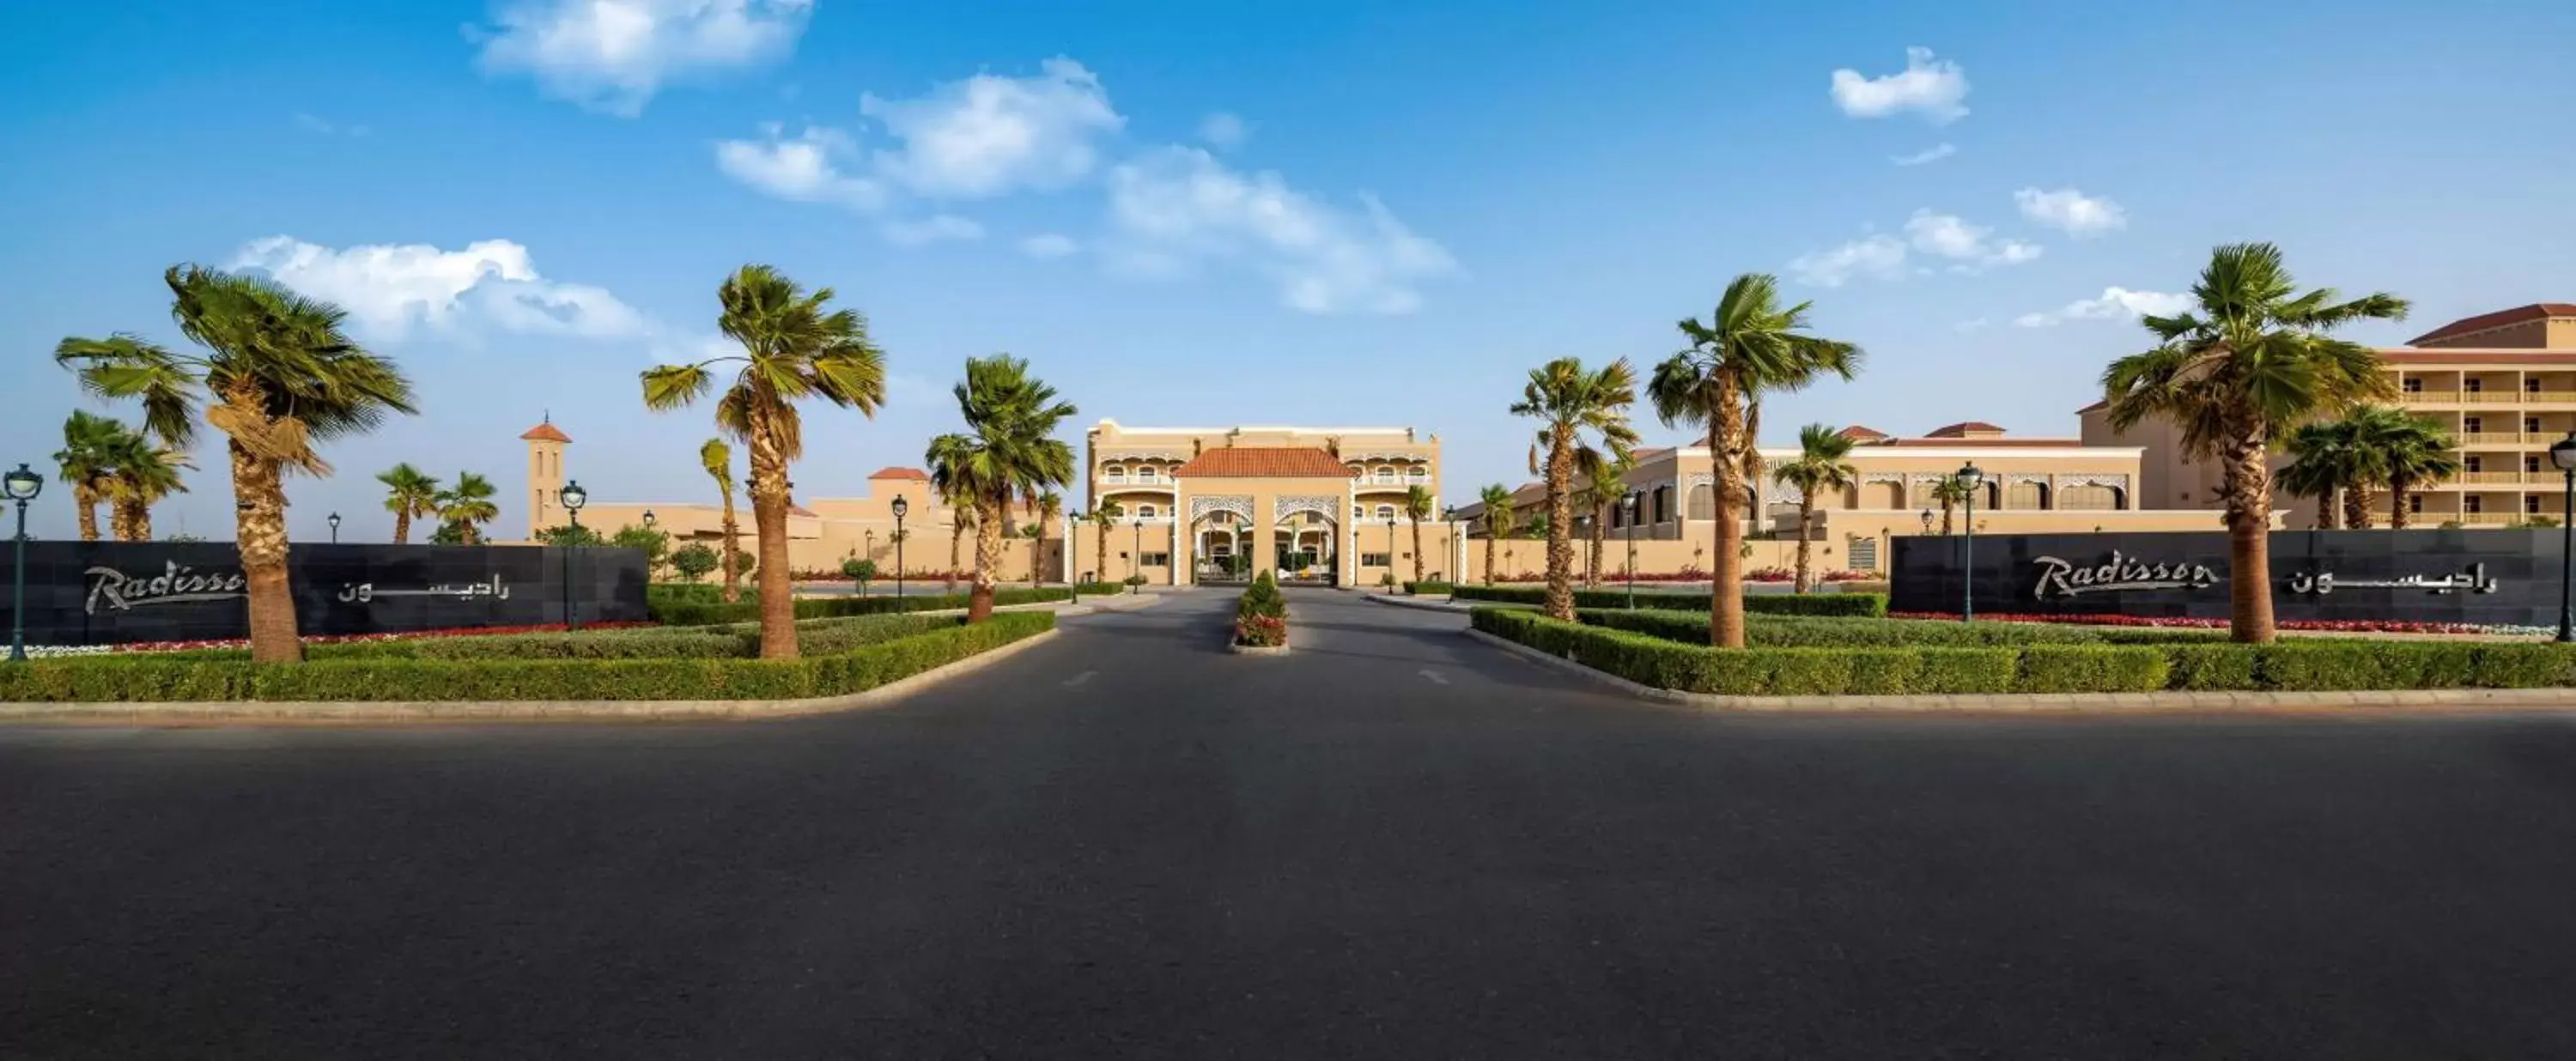 Property building in Radisson Hotel Riyadh Airport